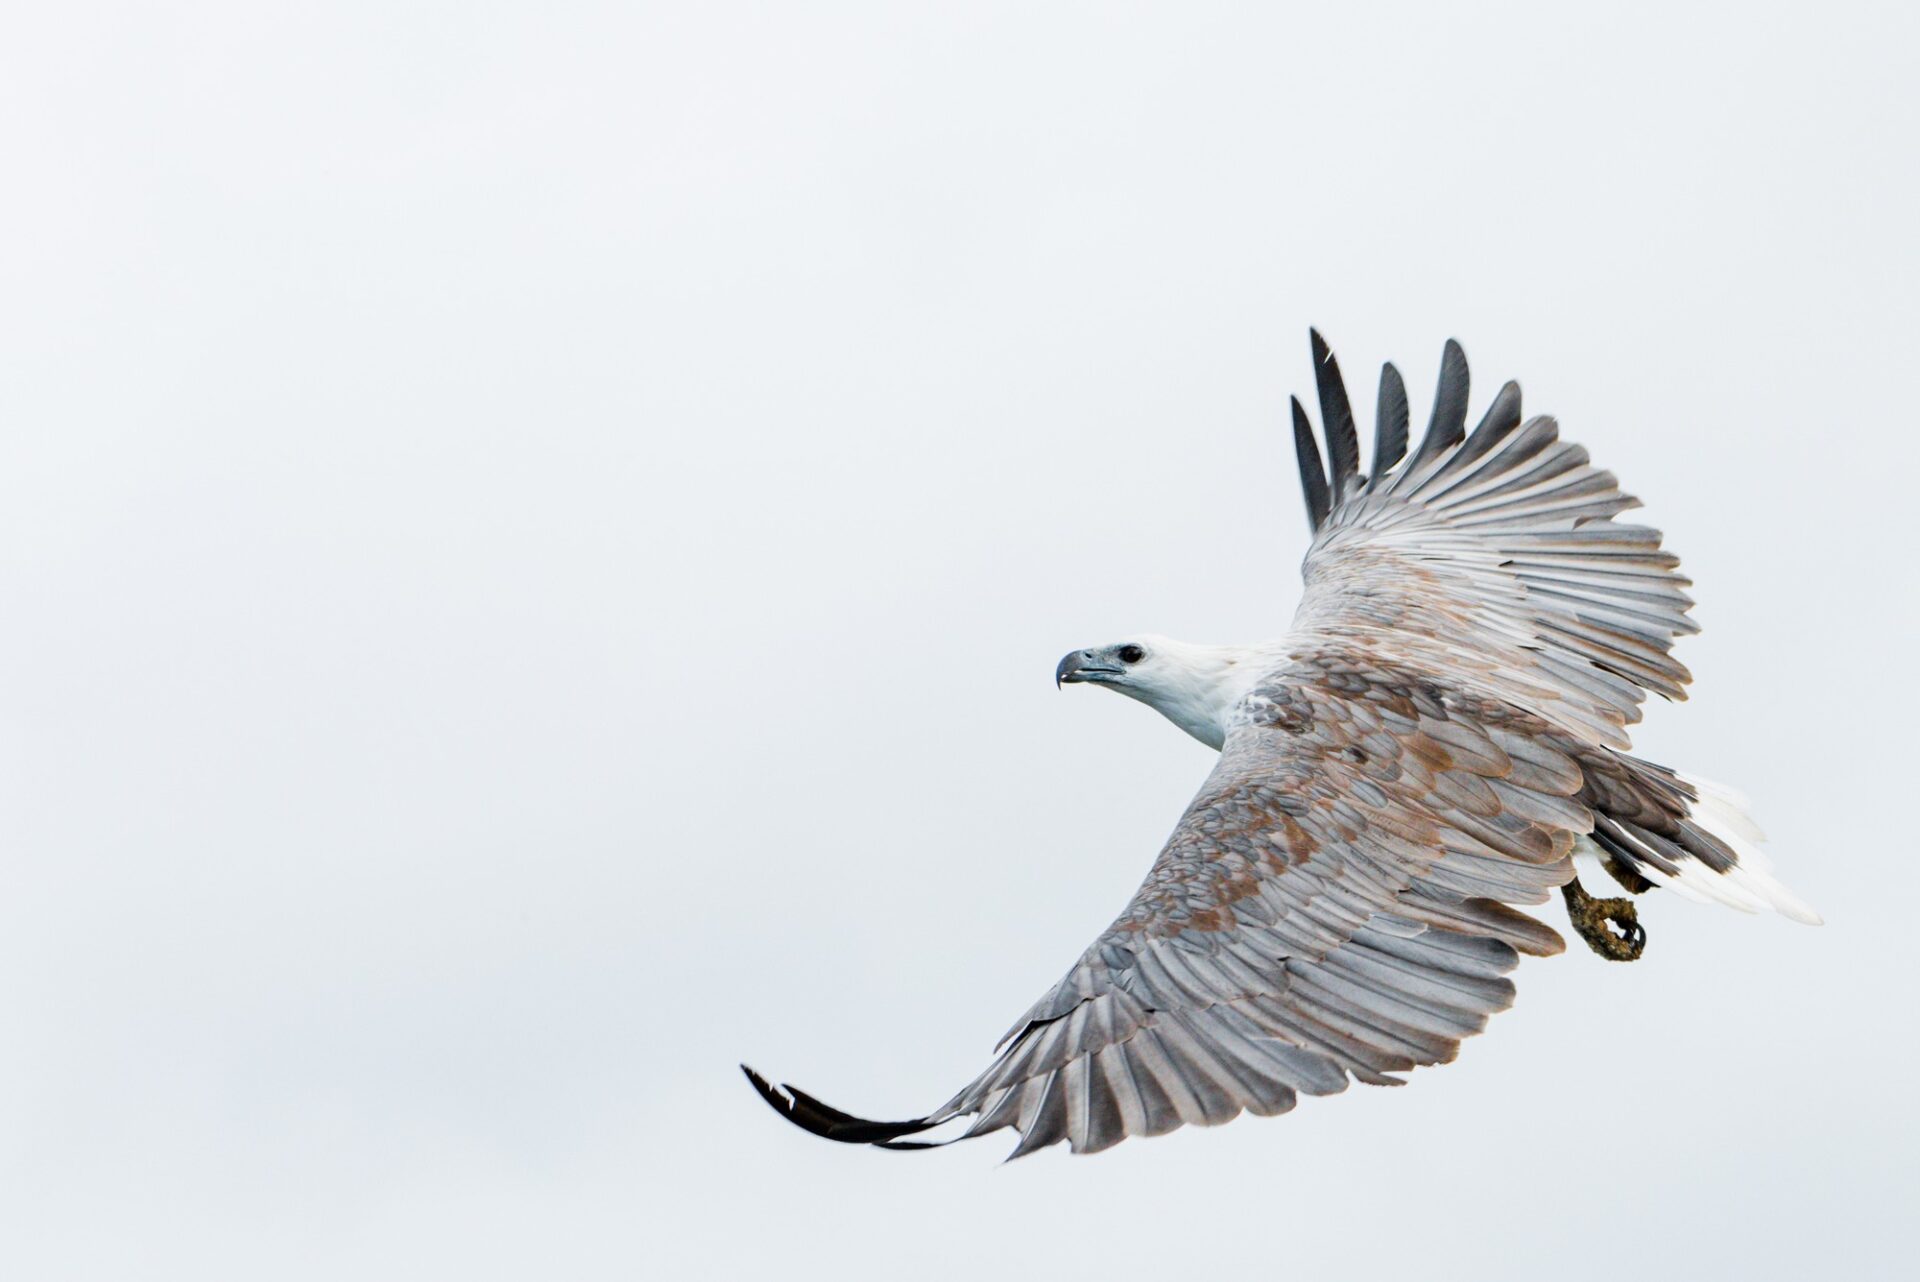 white-bellied sea eagle soaring